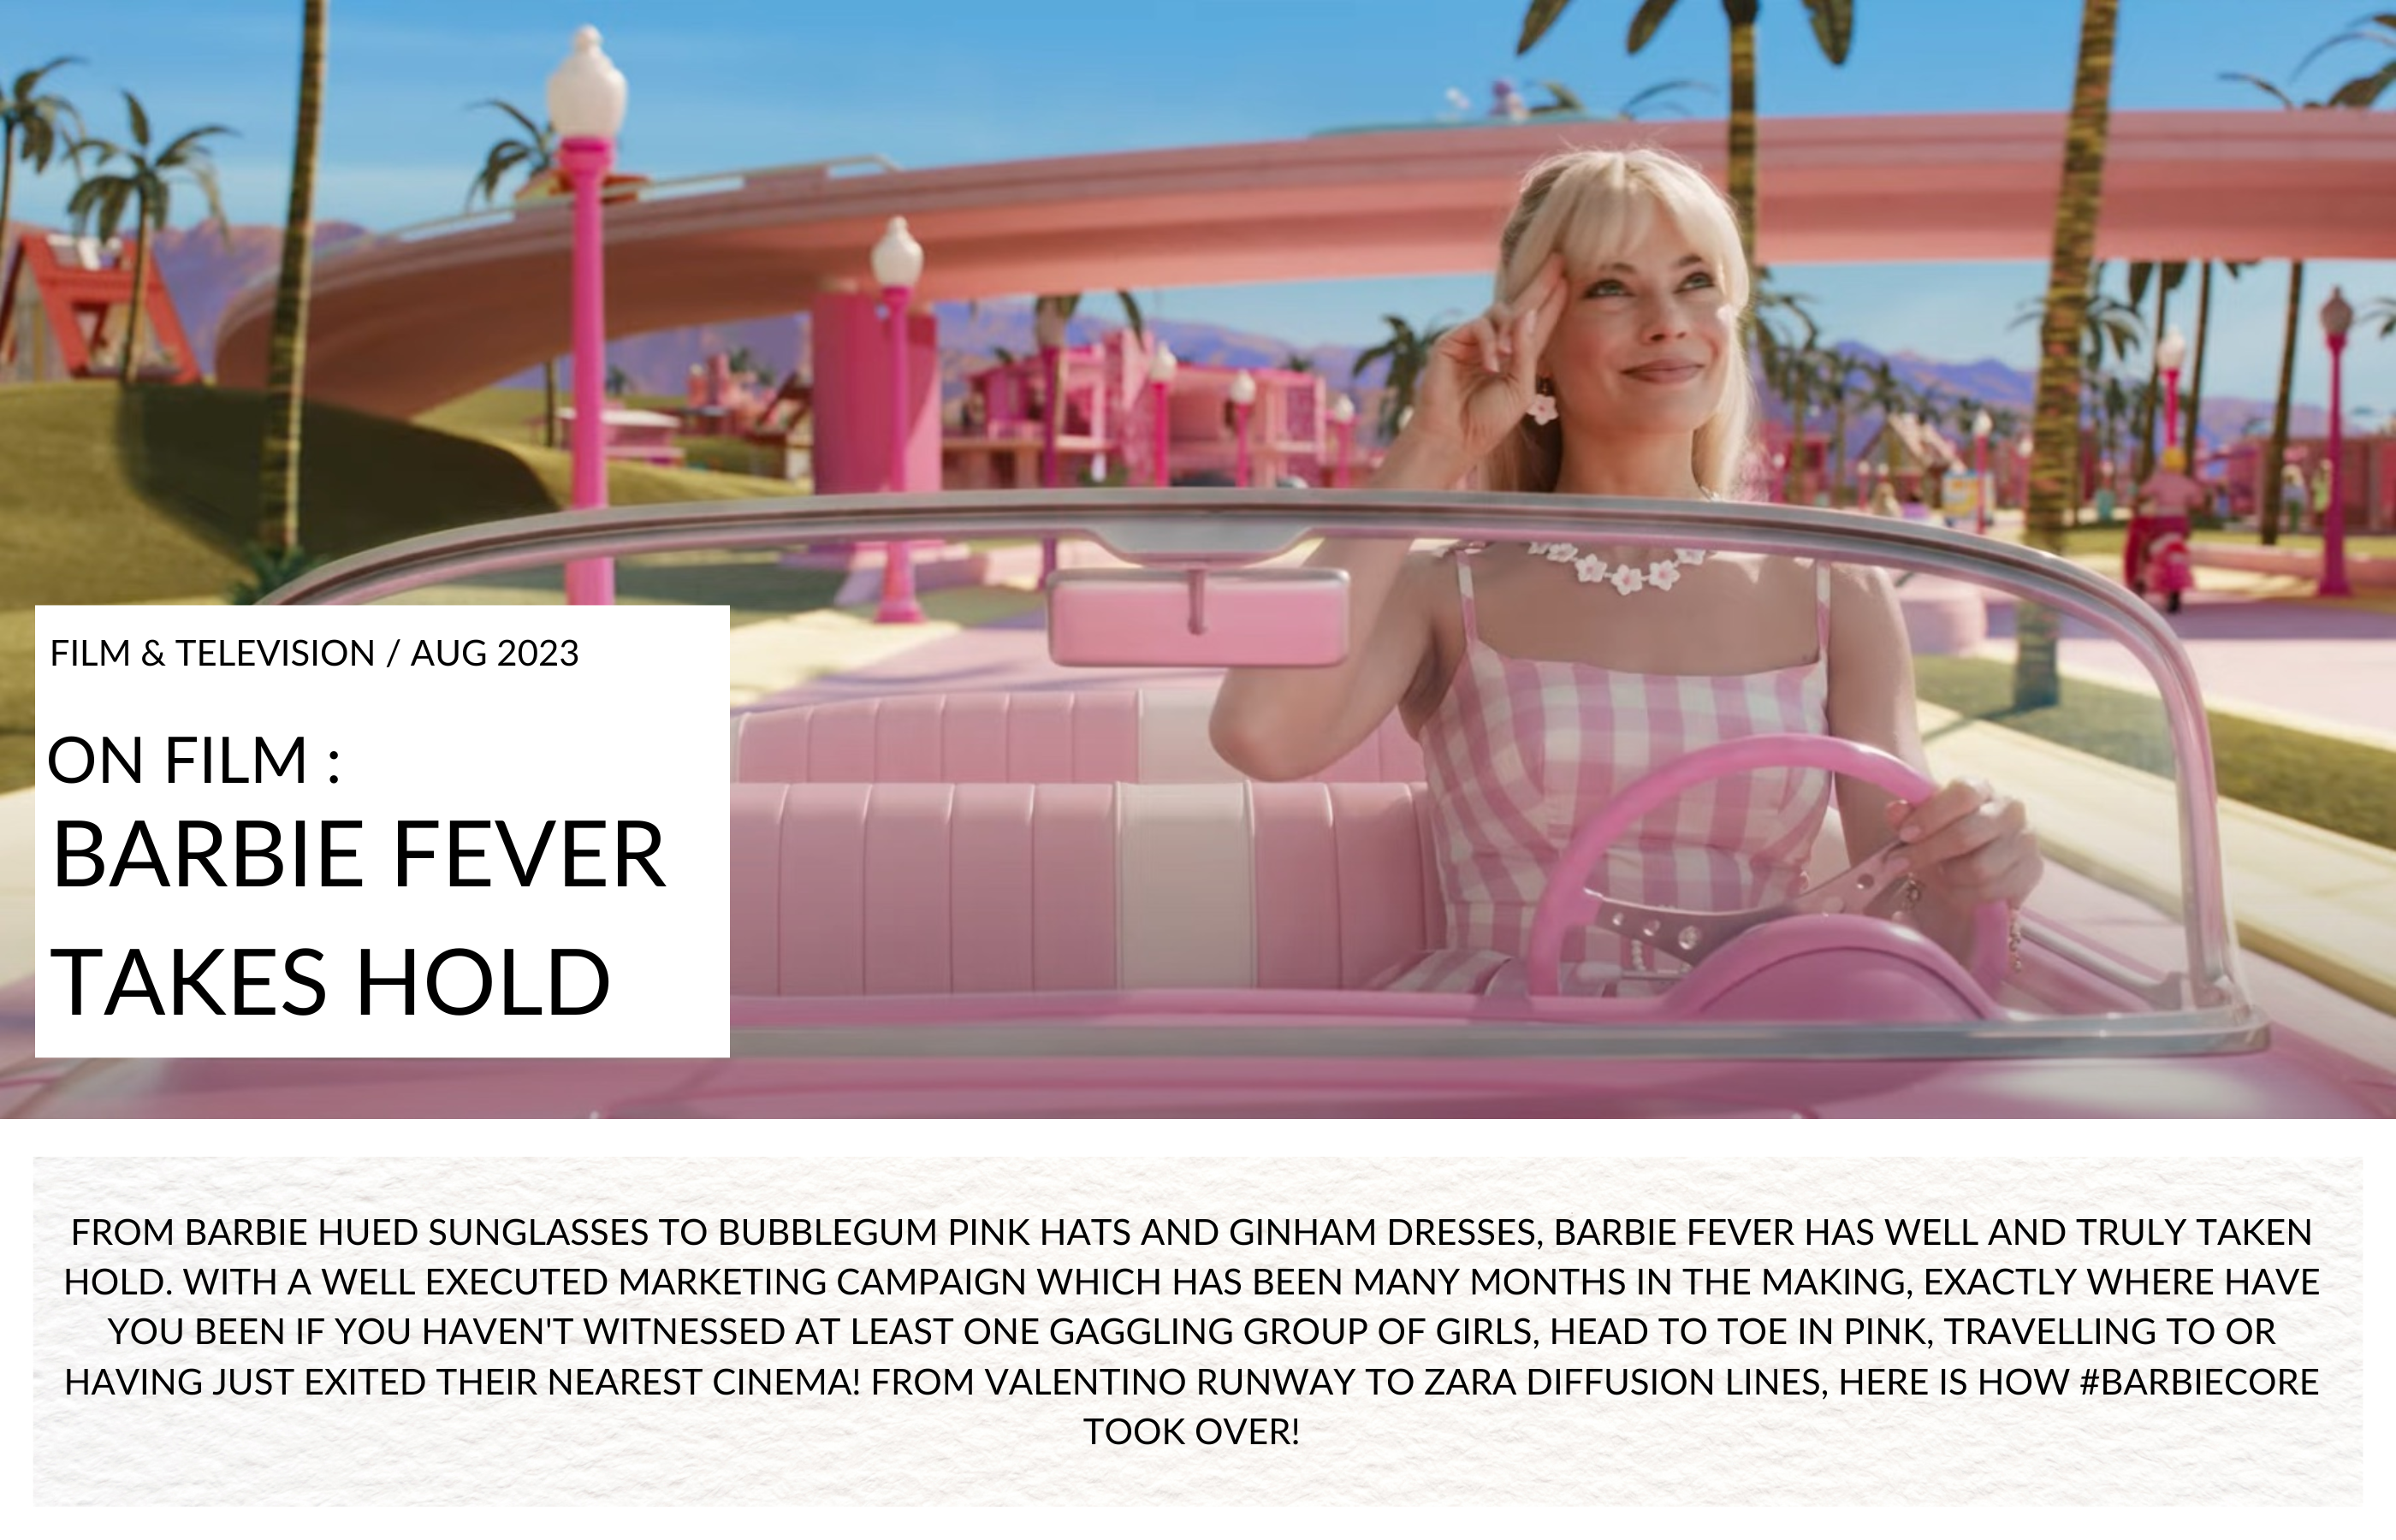 Barbie Fever - Margot Robbie as Barbie